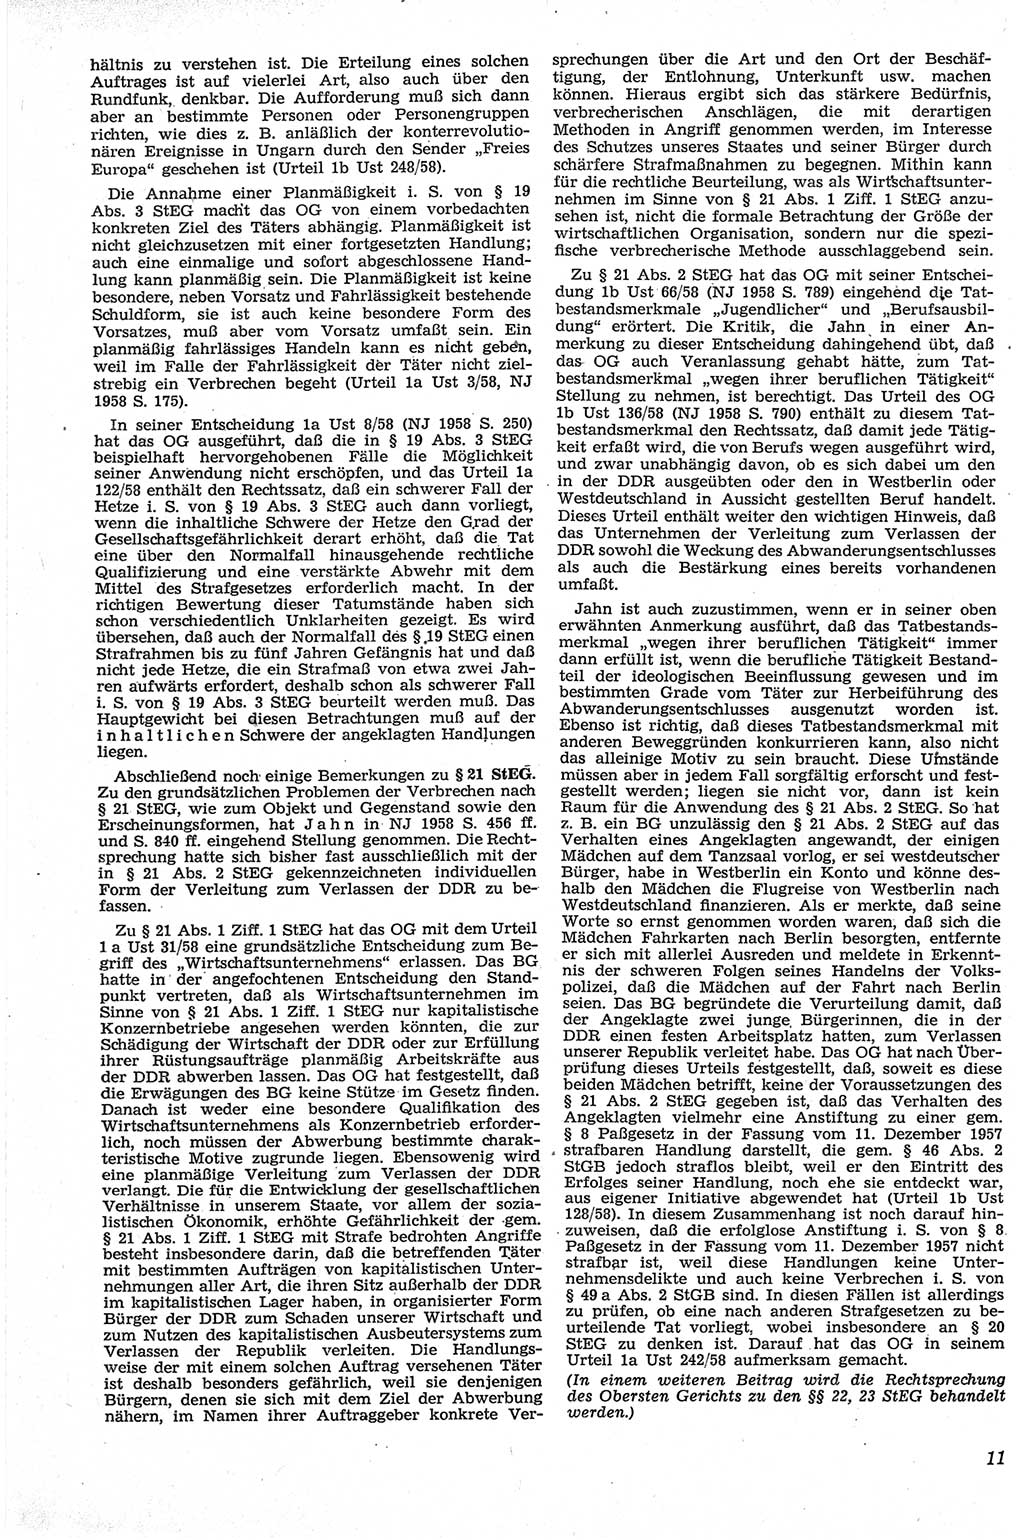 Neue Justiz (NJ), Zeitschrift für Recht und Rechtswissenschaft [Deutsche Demokratische Republik (DDR)], 13. Jahrgang 1959, Seite 11 (NJ DDR 1959, S. 11)